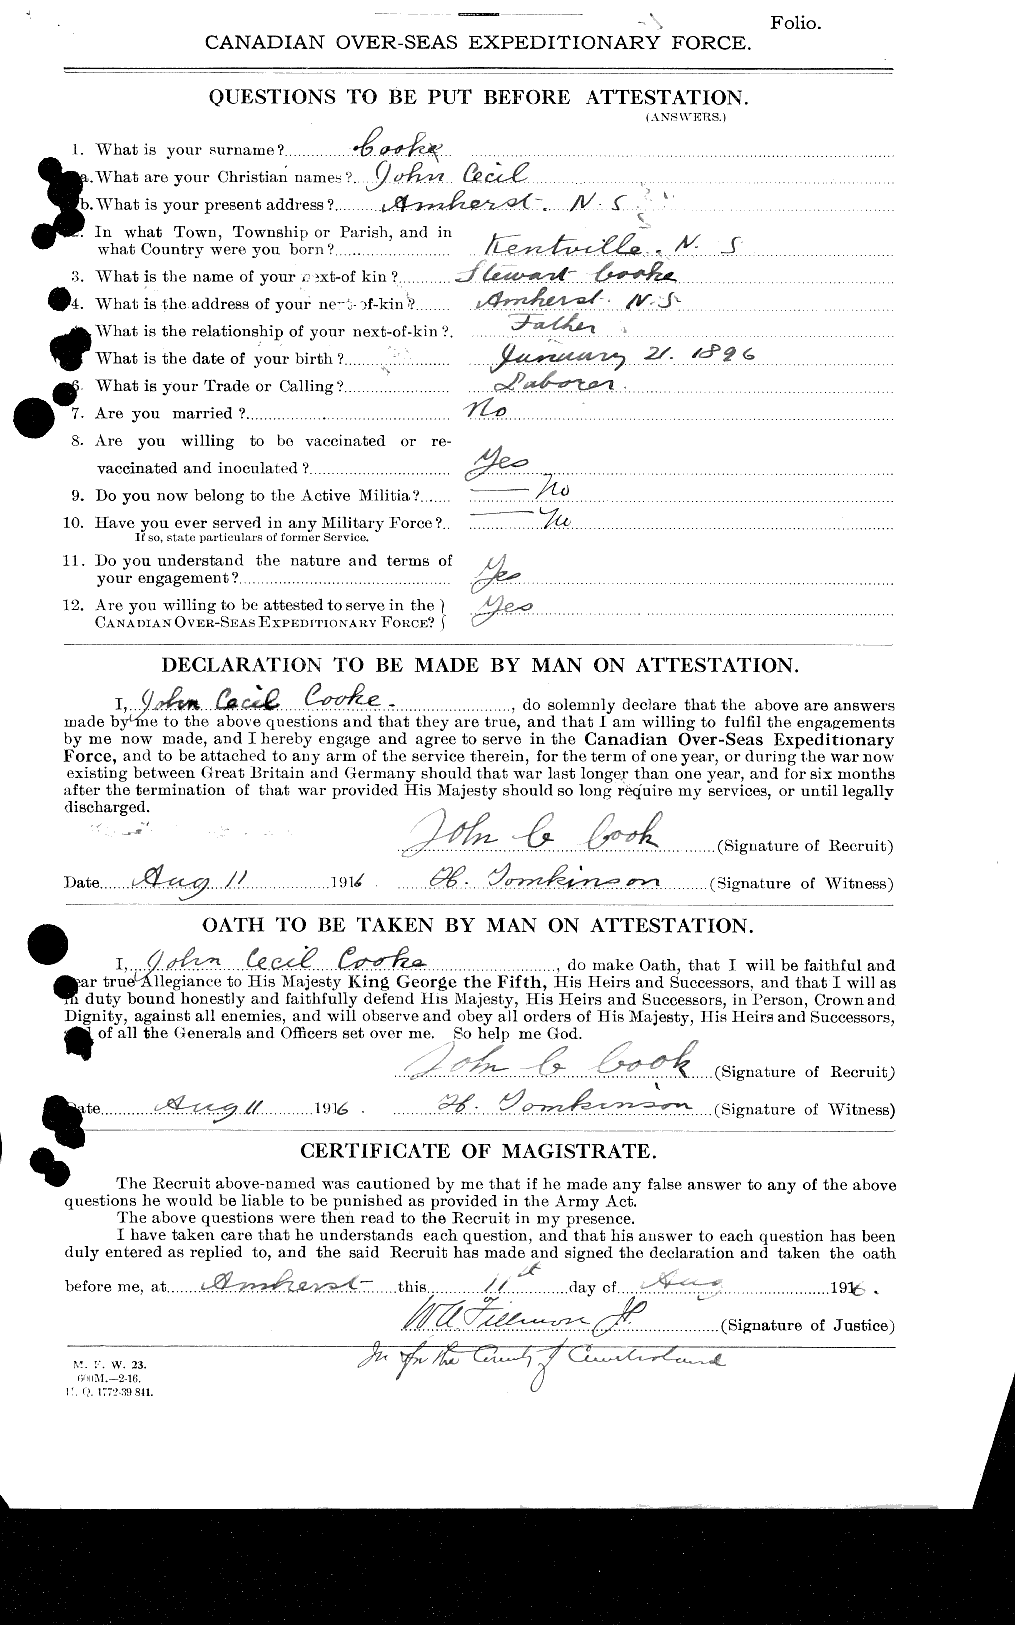 Dossiers du Personnel de la Première Guerre mondiale - CEC 047176a